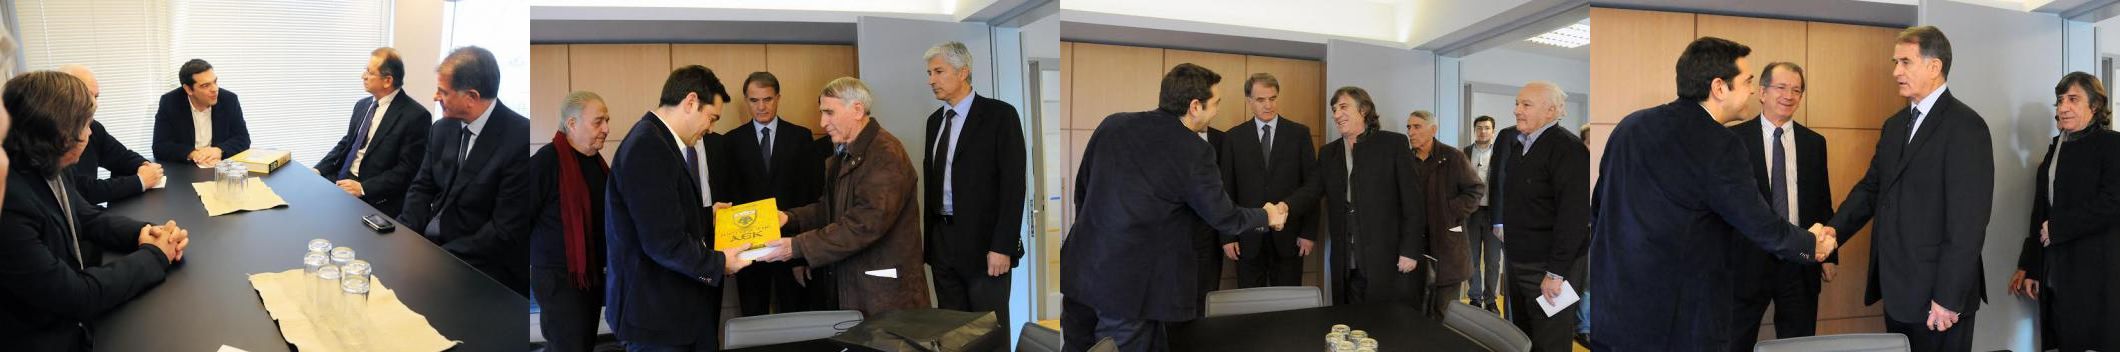 Συνάντηση του Προέδρου του ΣΥΡΙΖΑ, Αλέξη Τσίπρα με τους παλαίμαχους ποδοσφαιριστές της ΑΕΚ